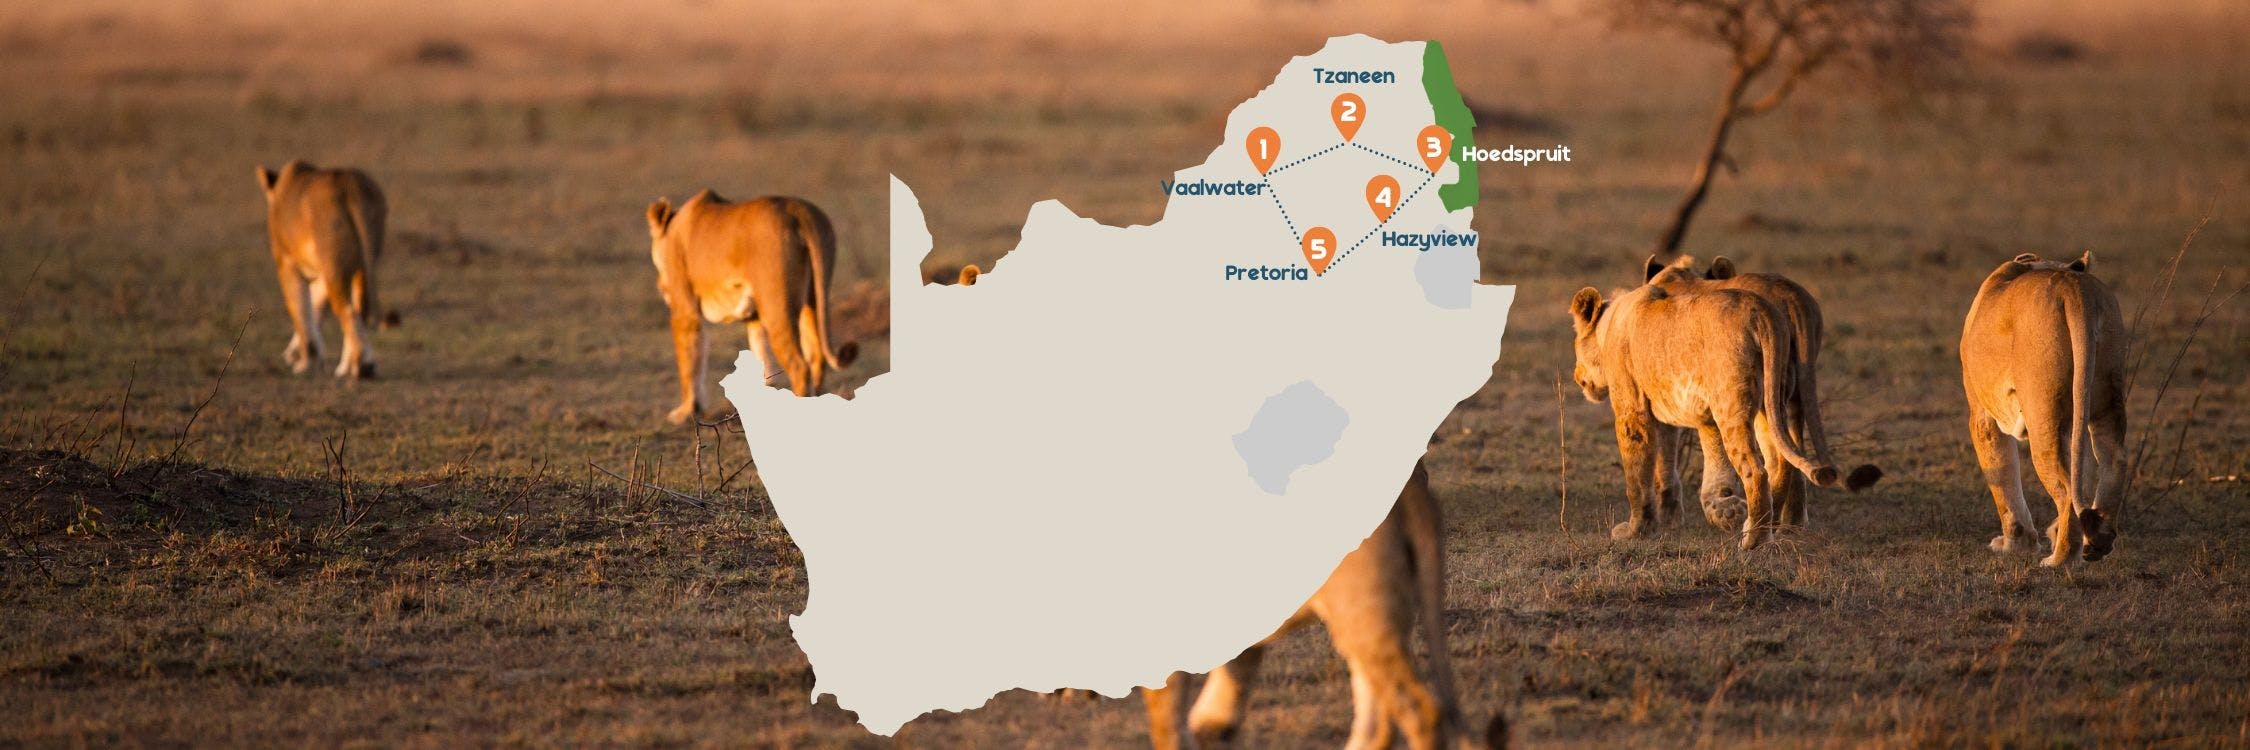 Slow Travel reisroutekaartje Zuid-Afrika desktop